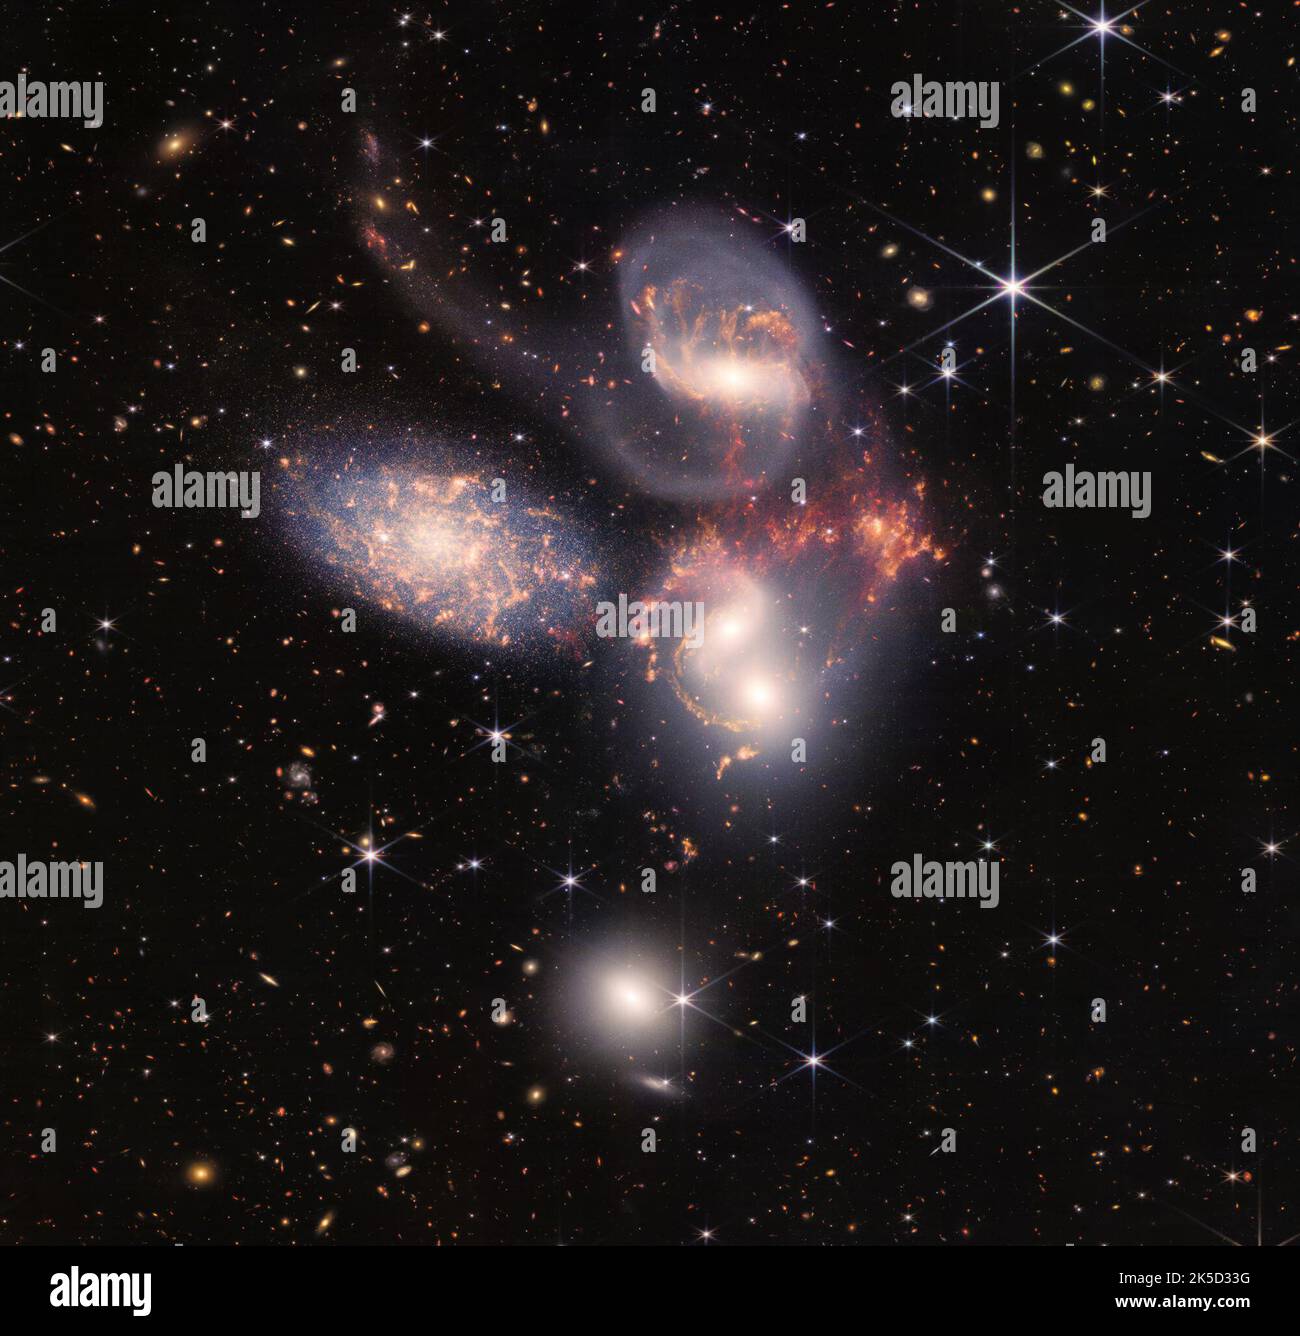 Ein riesiges Mosaik aus Stephans Quintett ist das bisher größte Bild des NASA-Weltraumteleskops James Webb, das etwa ein Fünftel des Mondes-Durchmessers abdeckt. Es enthält über 150 Millionen Pixel und besteht aus fast 1.000 separaten Bilddateien. Die visuelle Zusammenfassung von fünf Galaxien wurde von Webbs Nahinfrarot-Kamera (NIRCam) und dem Mid-Infrared Instrument (MIRI) aufgenommen. Mit seinem leistungsstarken, infraroten Sehen und der extrem hohen räumlichen Auflösung zeigt Webb in dieser Galaxiengruppe noch nie gesehene Details. Funkelnde Haufen von Millionen junger Sterne und Starburst-Regionen mit frischer Sterngeburt Stockfoto